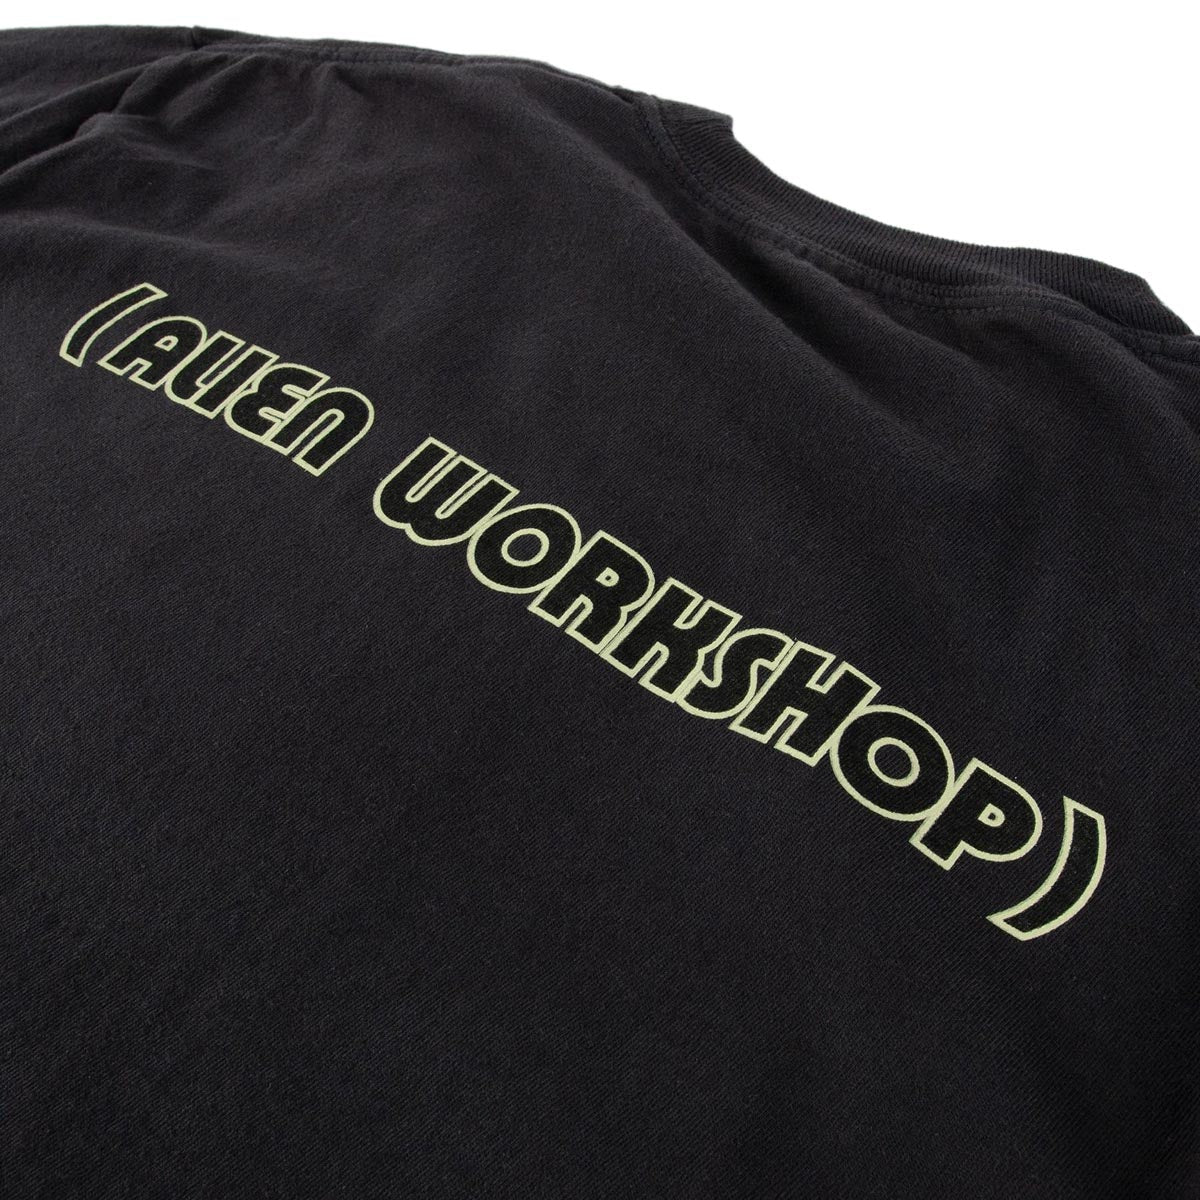 Alien Workshop Mantis T-Shirt - Black image 4